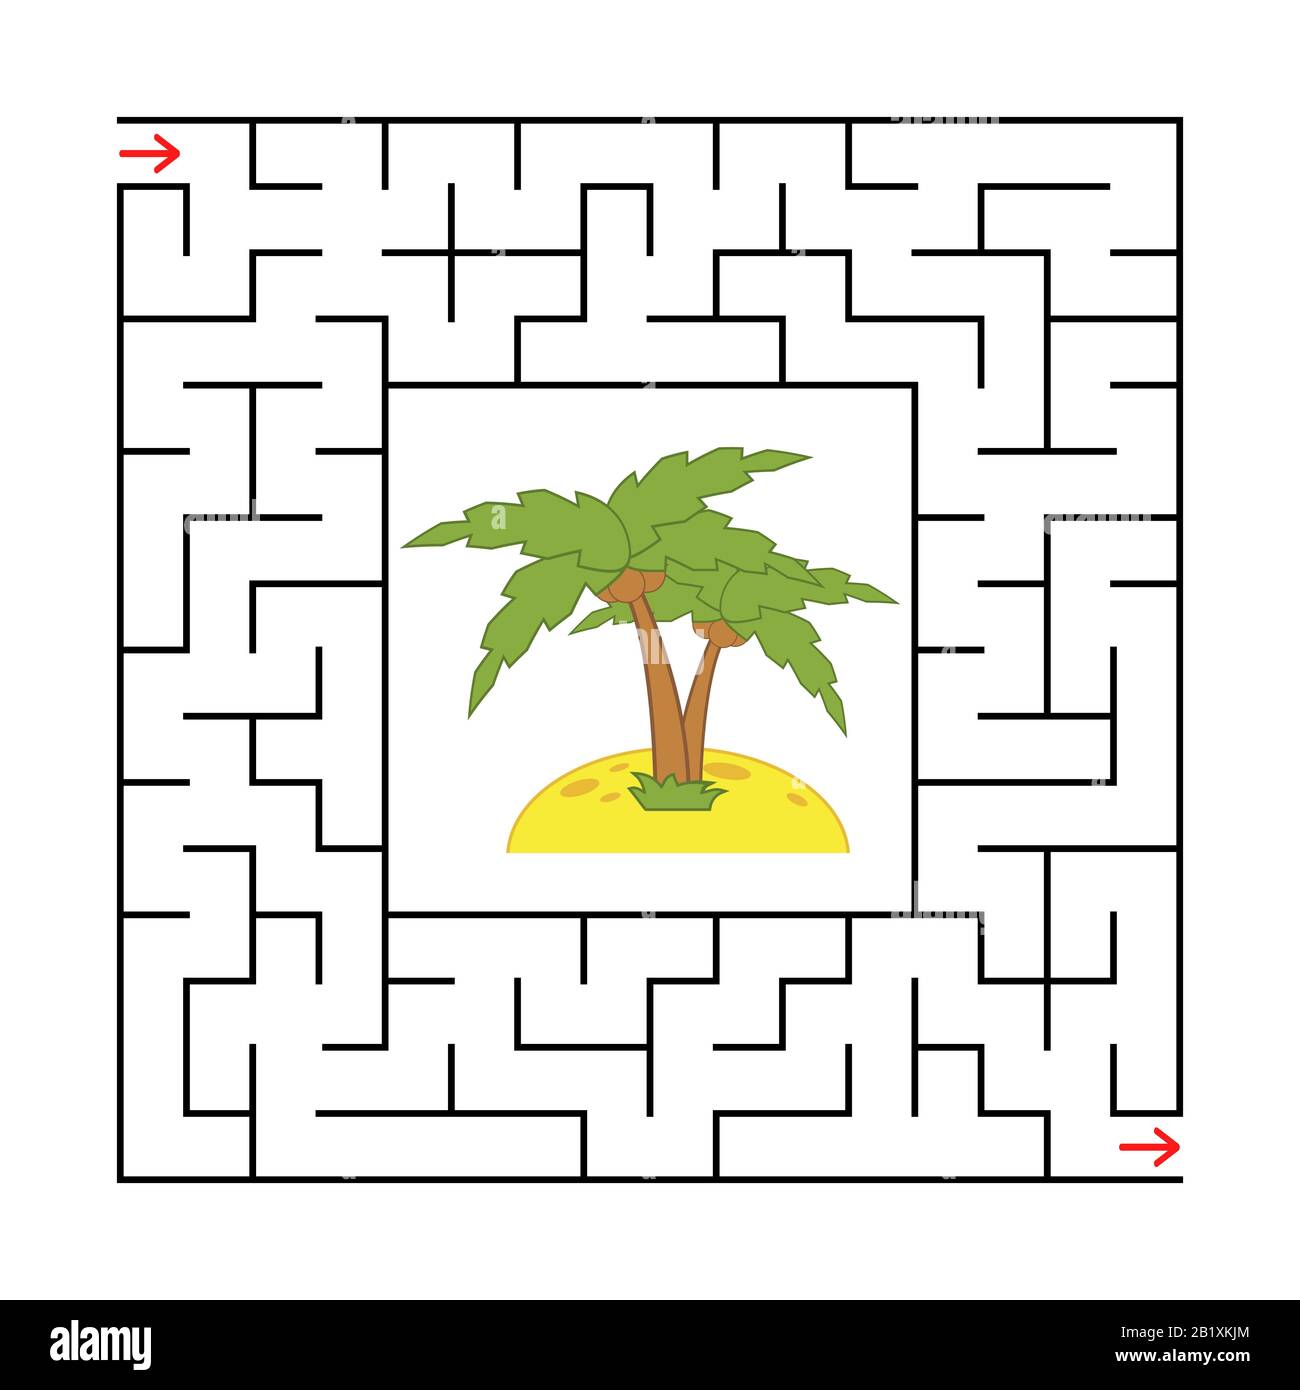 Labirinto quadrato astratto con un'immagine a colori. Isola con una palma. Un gioco interessante e utile per i bambini. Semplice immagine vettoriale piatta isola Illustrazione Vettoriale